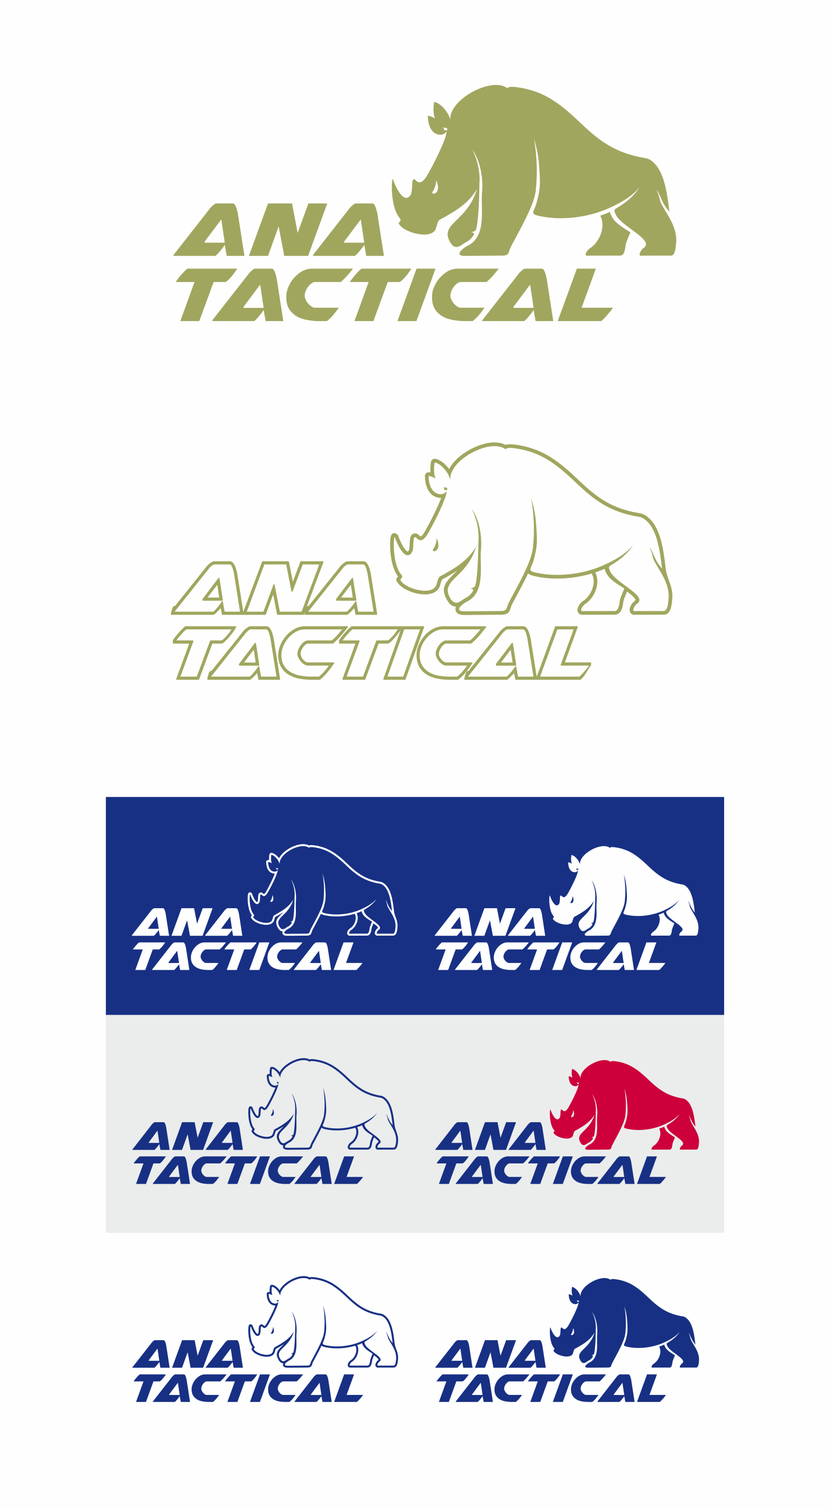 Еще чуть подправил - Разработка Логотипа для бренда Тактической военной одежды и снаряжения.